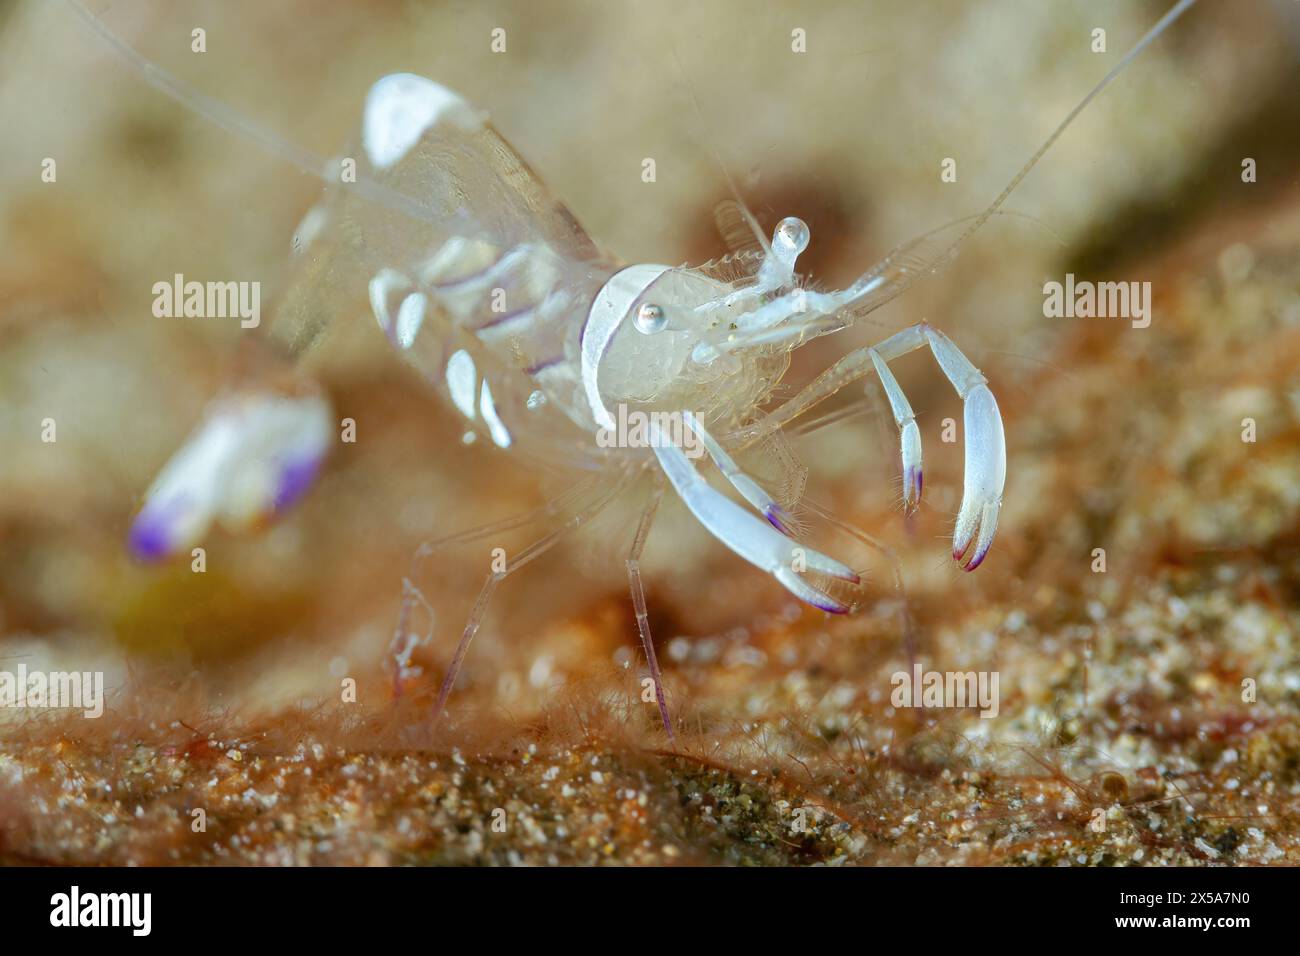 Une image en gros plan montrant une crevette transparente sur un fond marin texturé, montrant son corps délicat et semi-translucide et ses appendices détaillés Banque D'Images